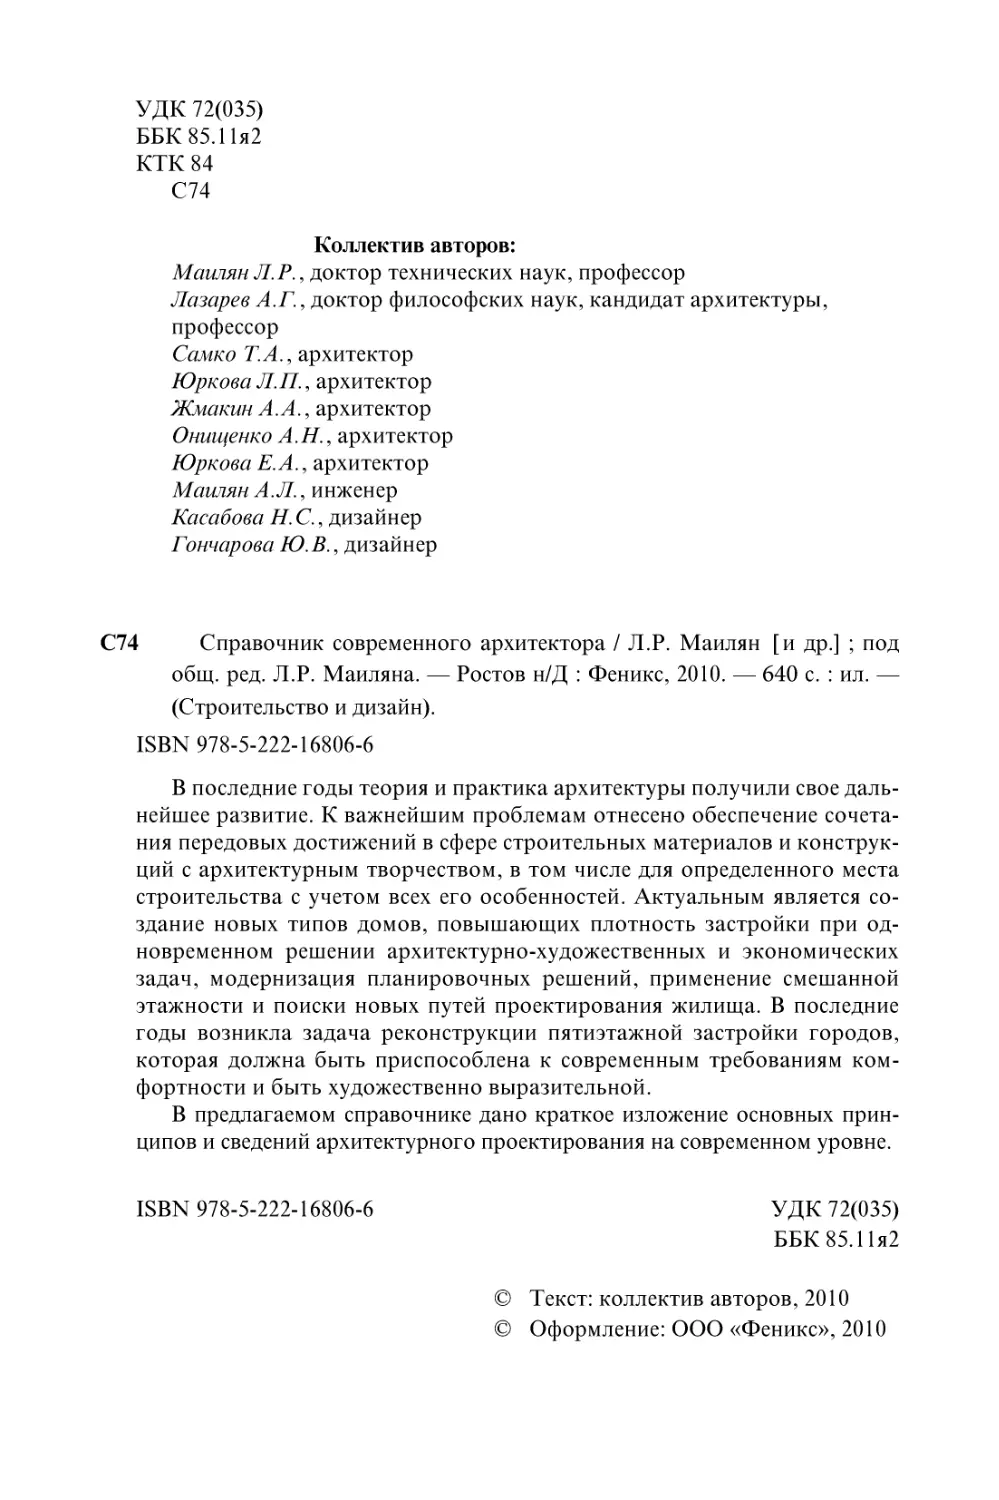 Арх-1-19-03-10.pdf